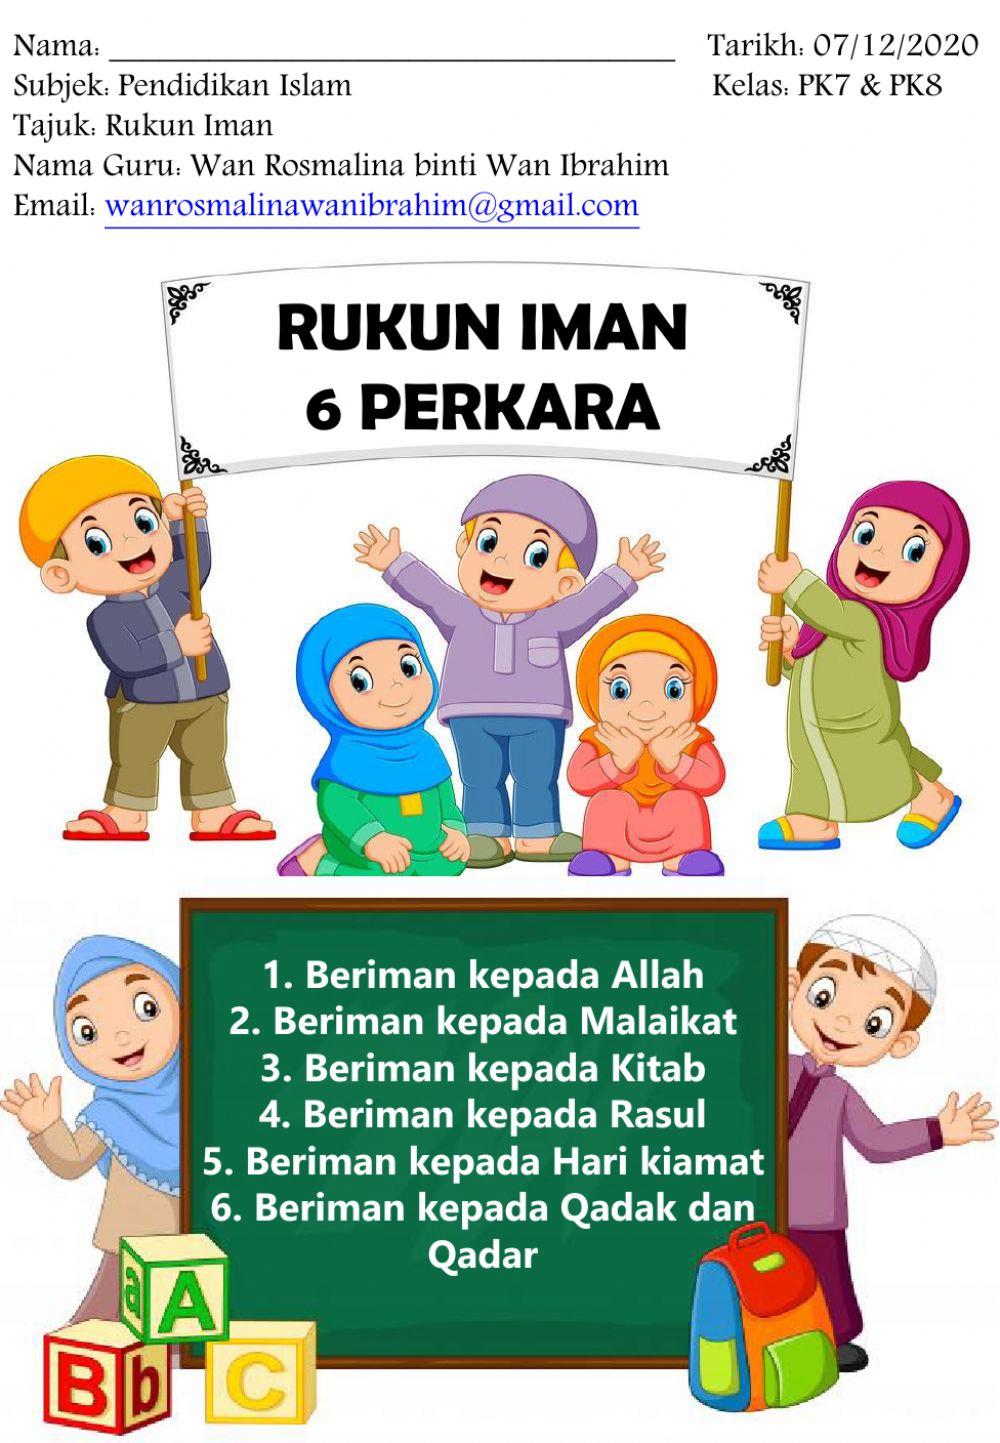 Rukun Iman Pendidikan Islam exercise | Live Worksheets